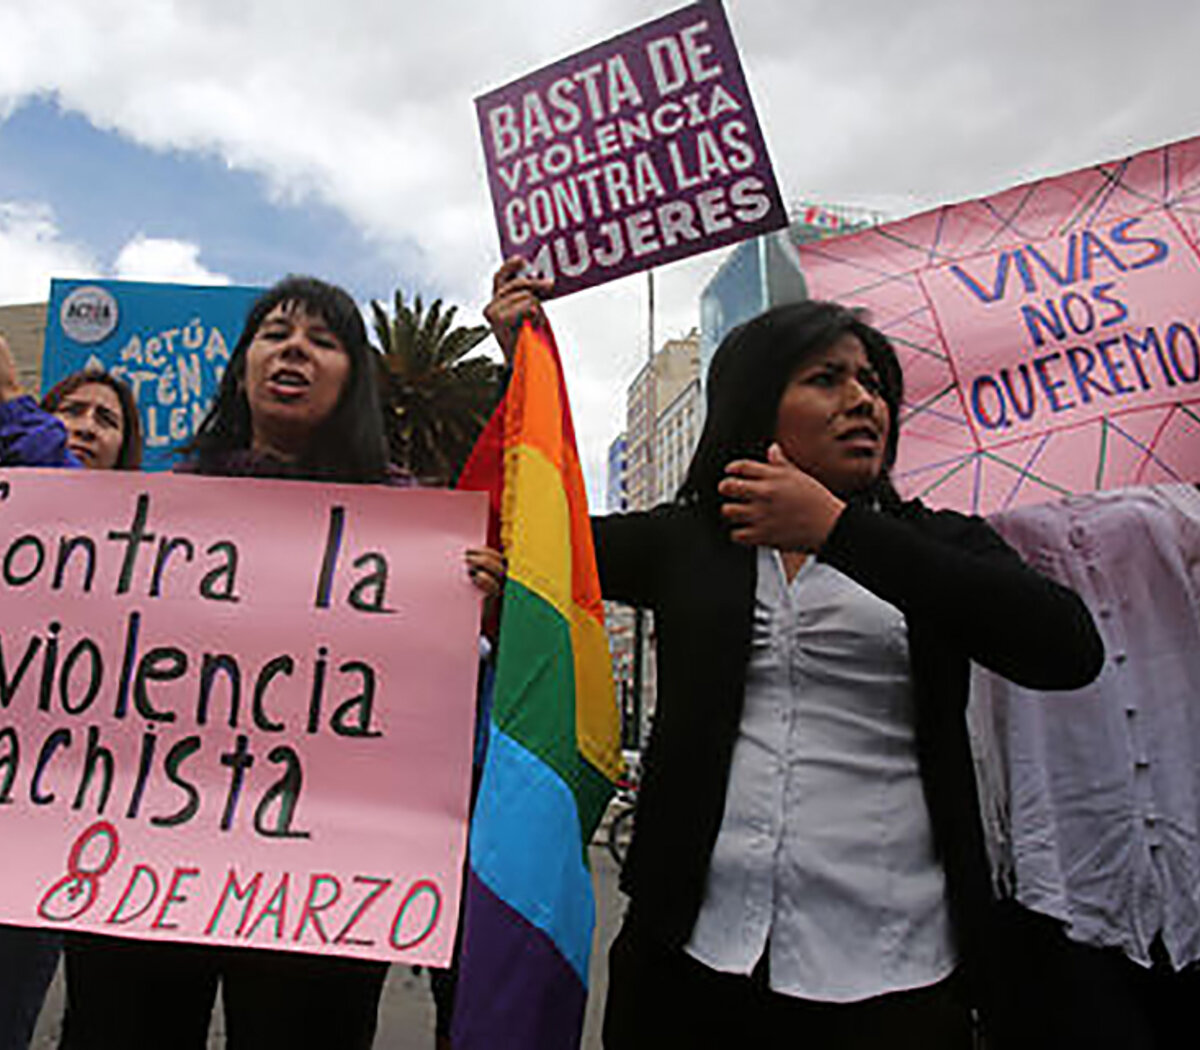 El feminismo se le planta al gobierno de facto en Bolivia | La Delegación de Feministas Plurinacionales llegó a Bolivia | Página12